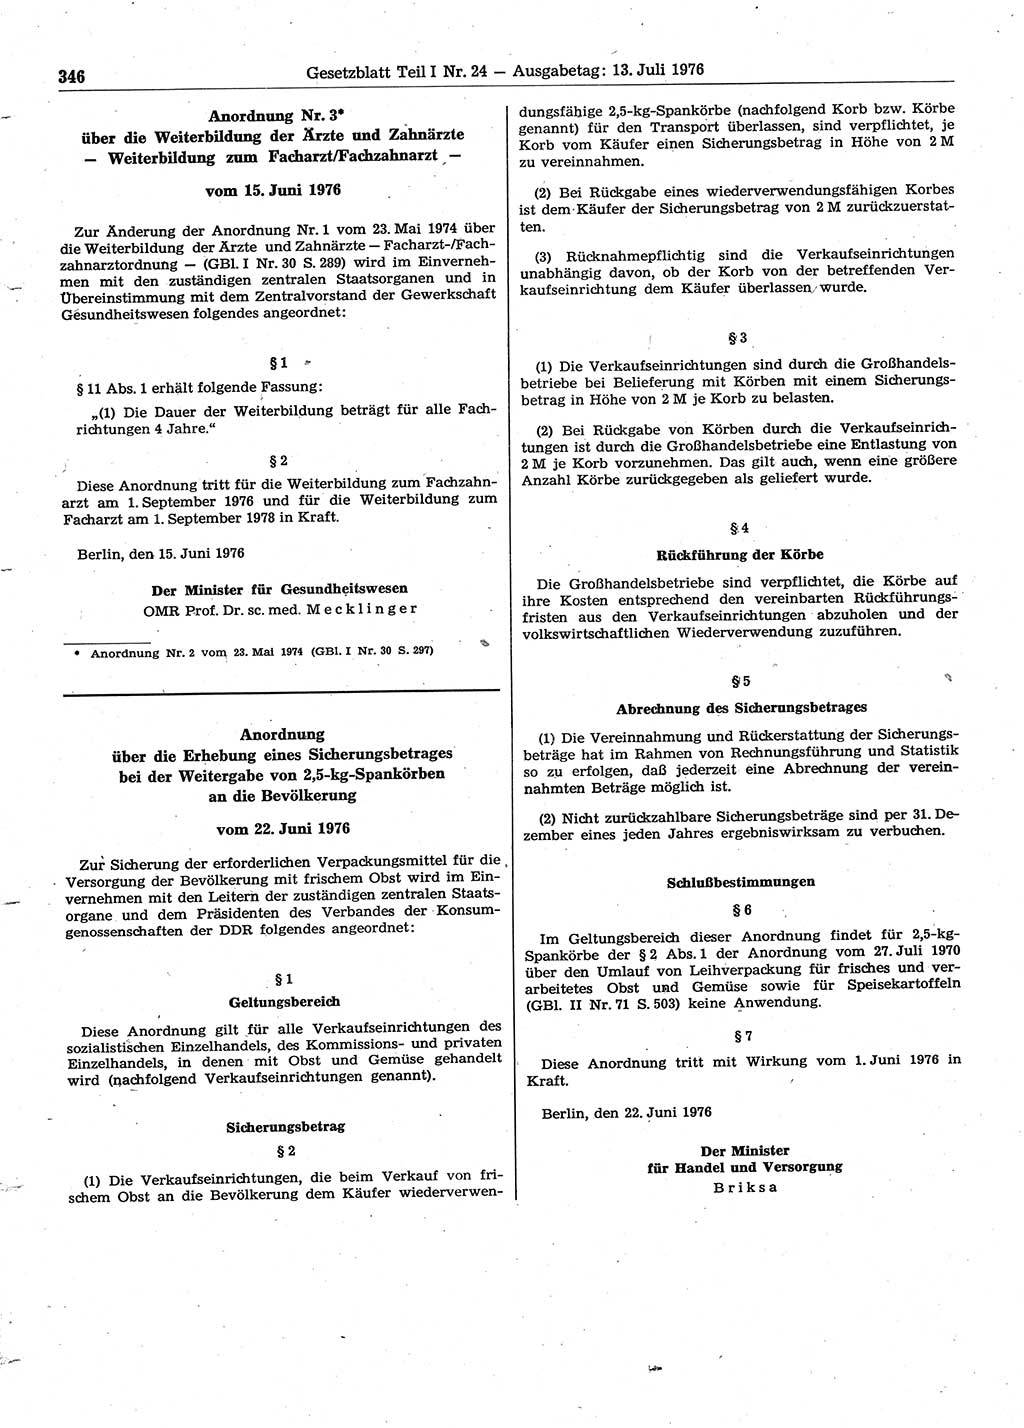 Gesetzblatt (GBl.) der Deutschen Demokratischen Republik (DDR) Teil Ⅰ 1976, Seite 346 (GBl. DDR Ⅰ 1976, S. 346)